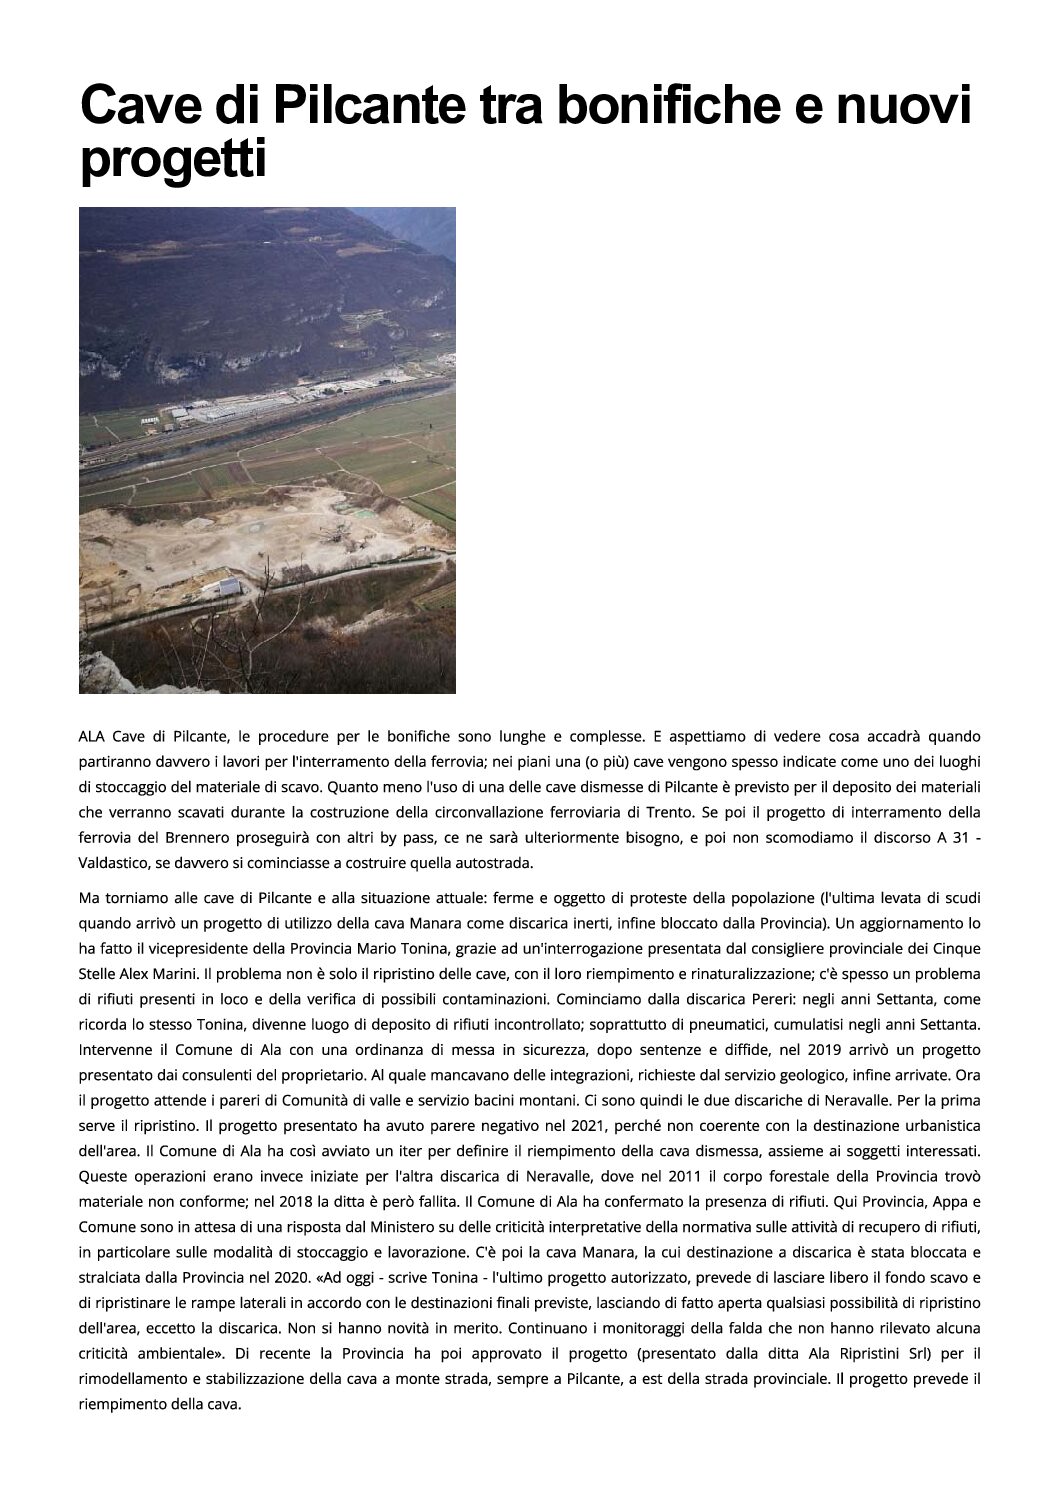 Ala, cave di Pilcante: tra bonifiche e nuovi progetti